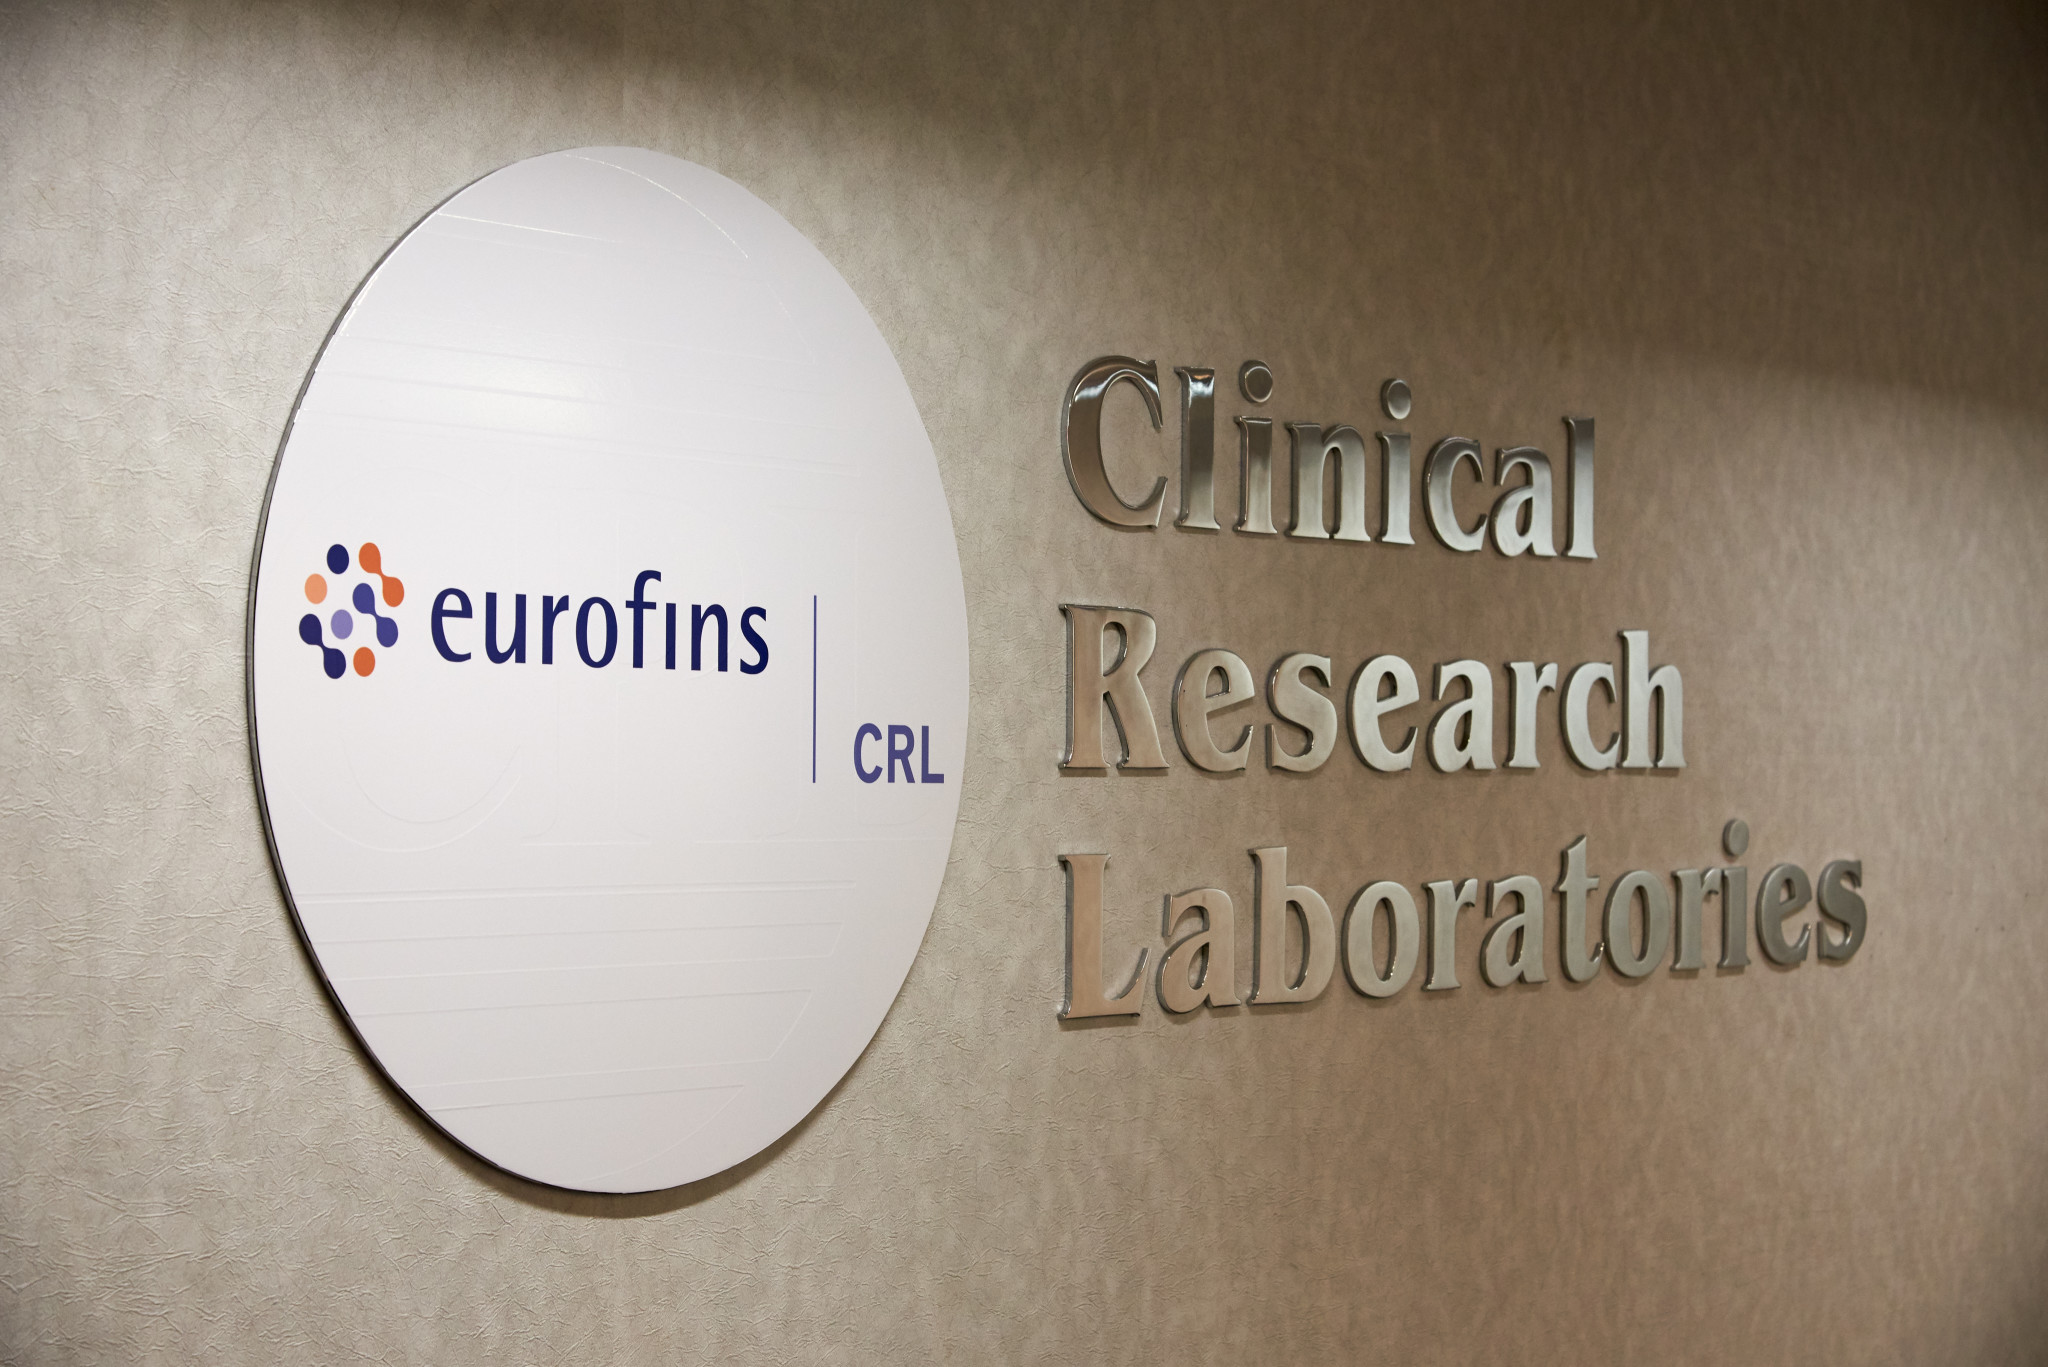 About - Eurofins CRL